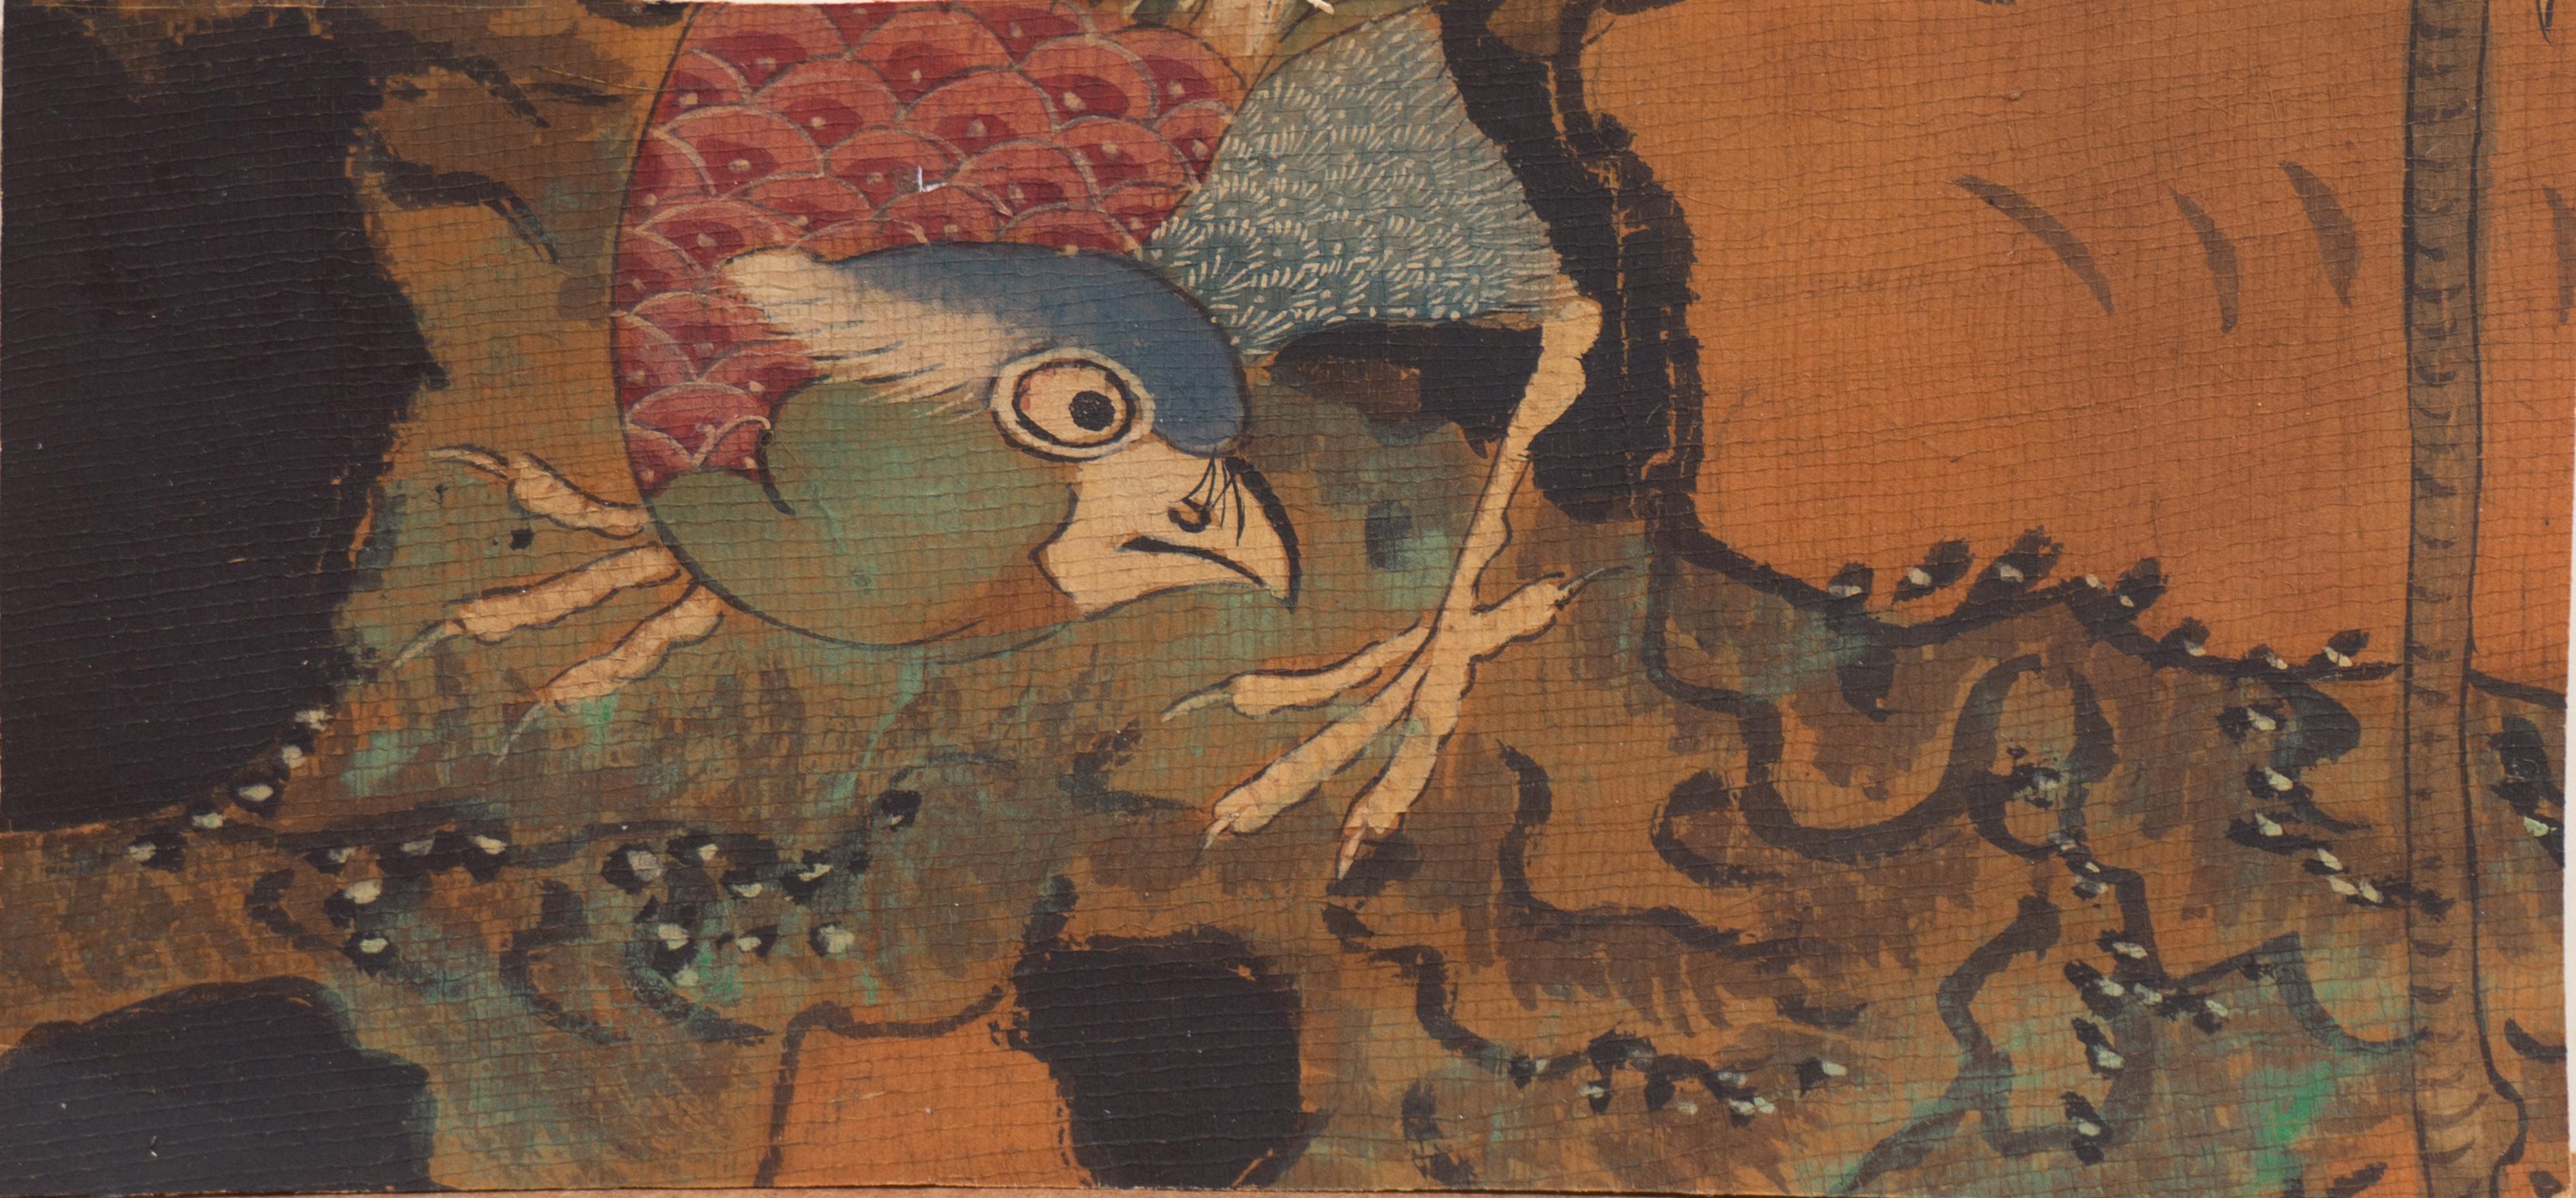 Animal Art 19th Century Chinese school - « Bird of Paradise on a Mossy Rock » (oiseau du paradis sur une roche moussue), peinture d'école chinoise du 19e siècle